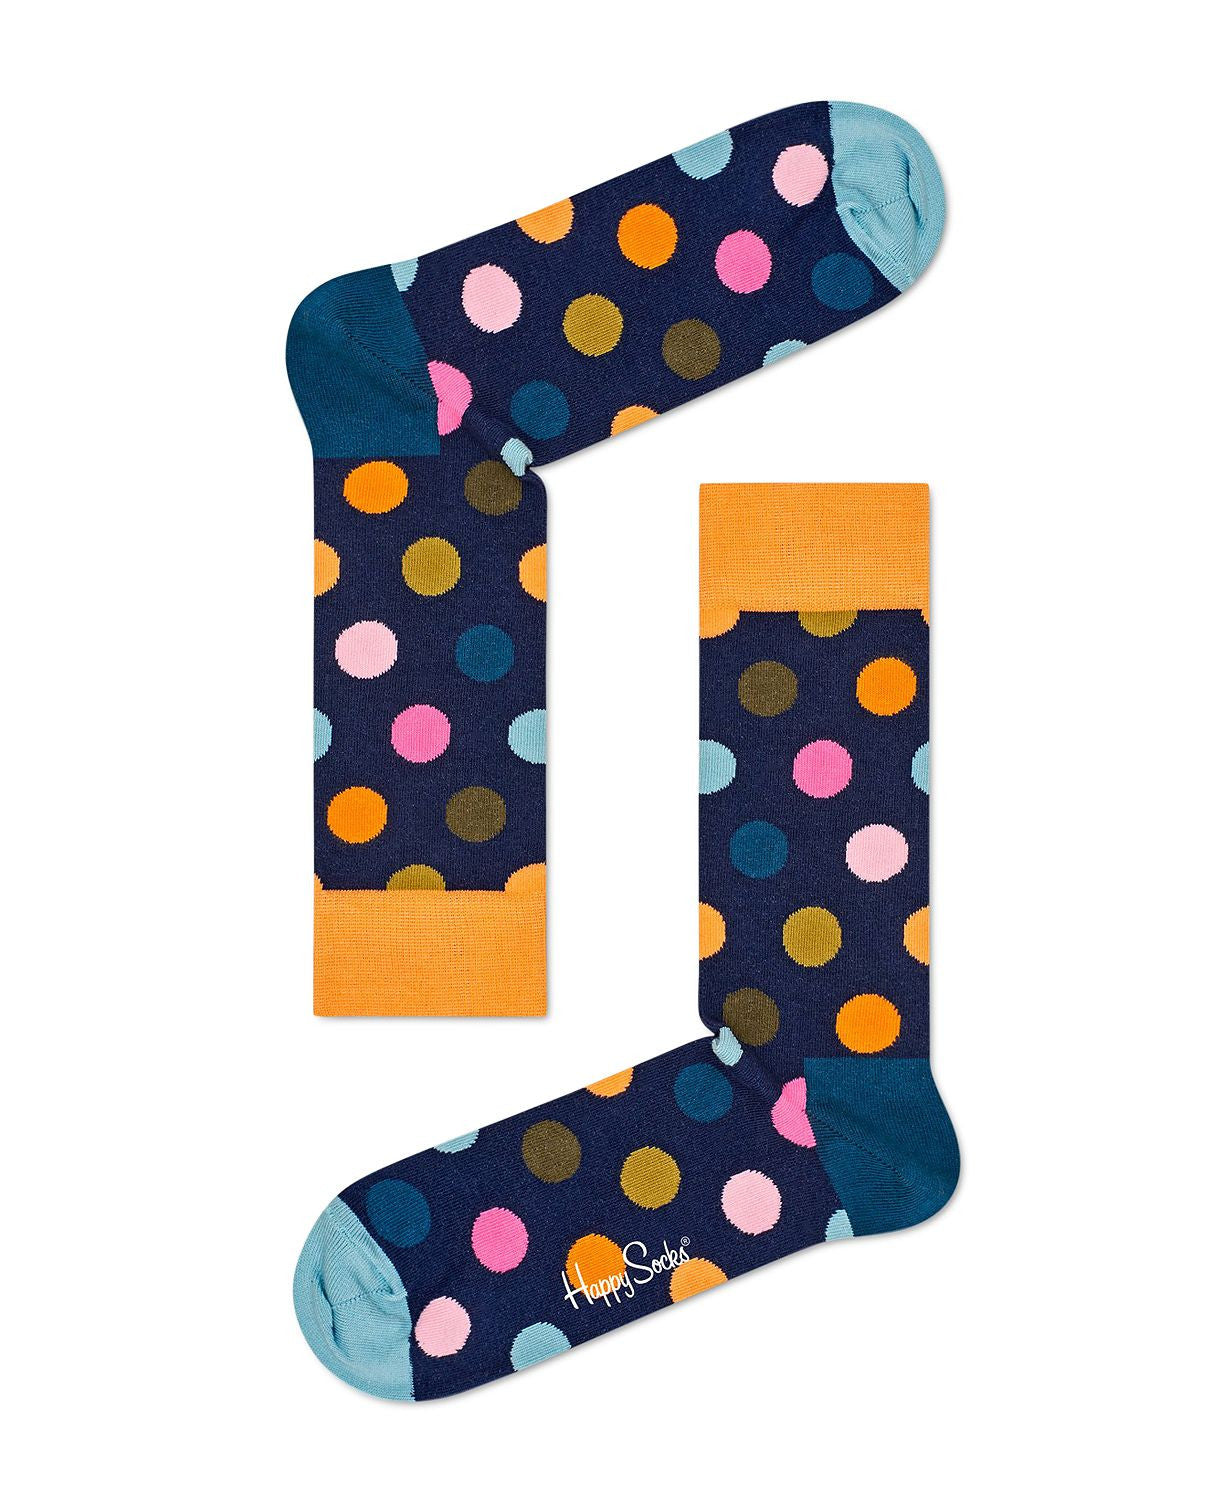 Happy Socks Big Dot Socks Navy/orange/teal